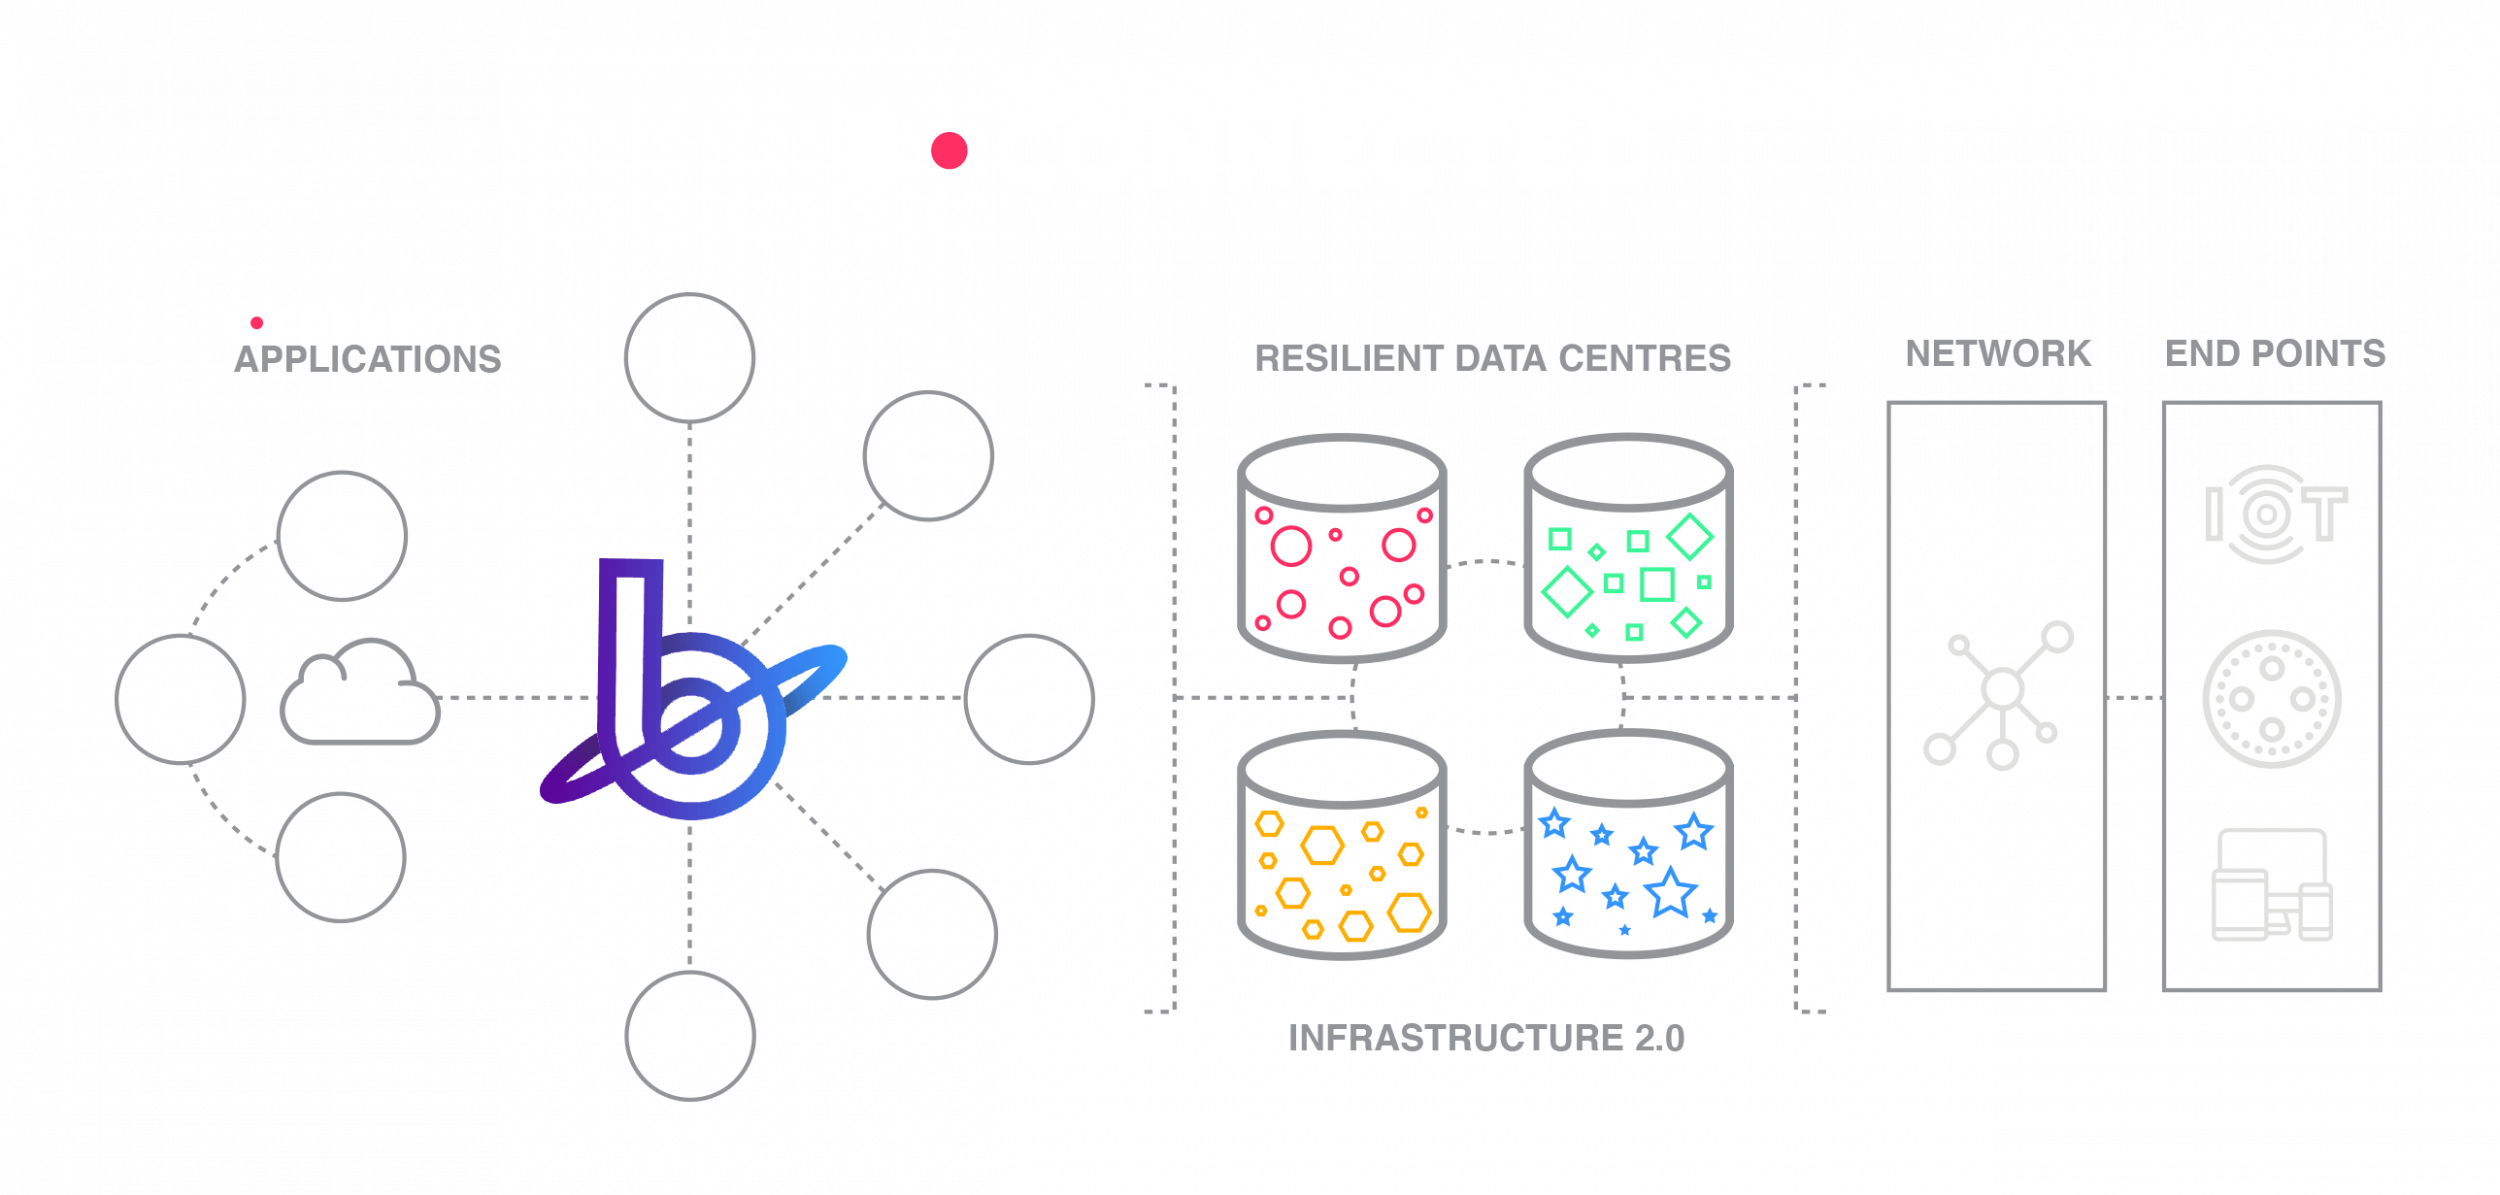 B•CONNECTED - Our Cloud Platform